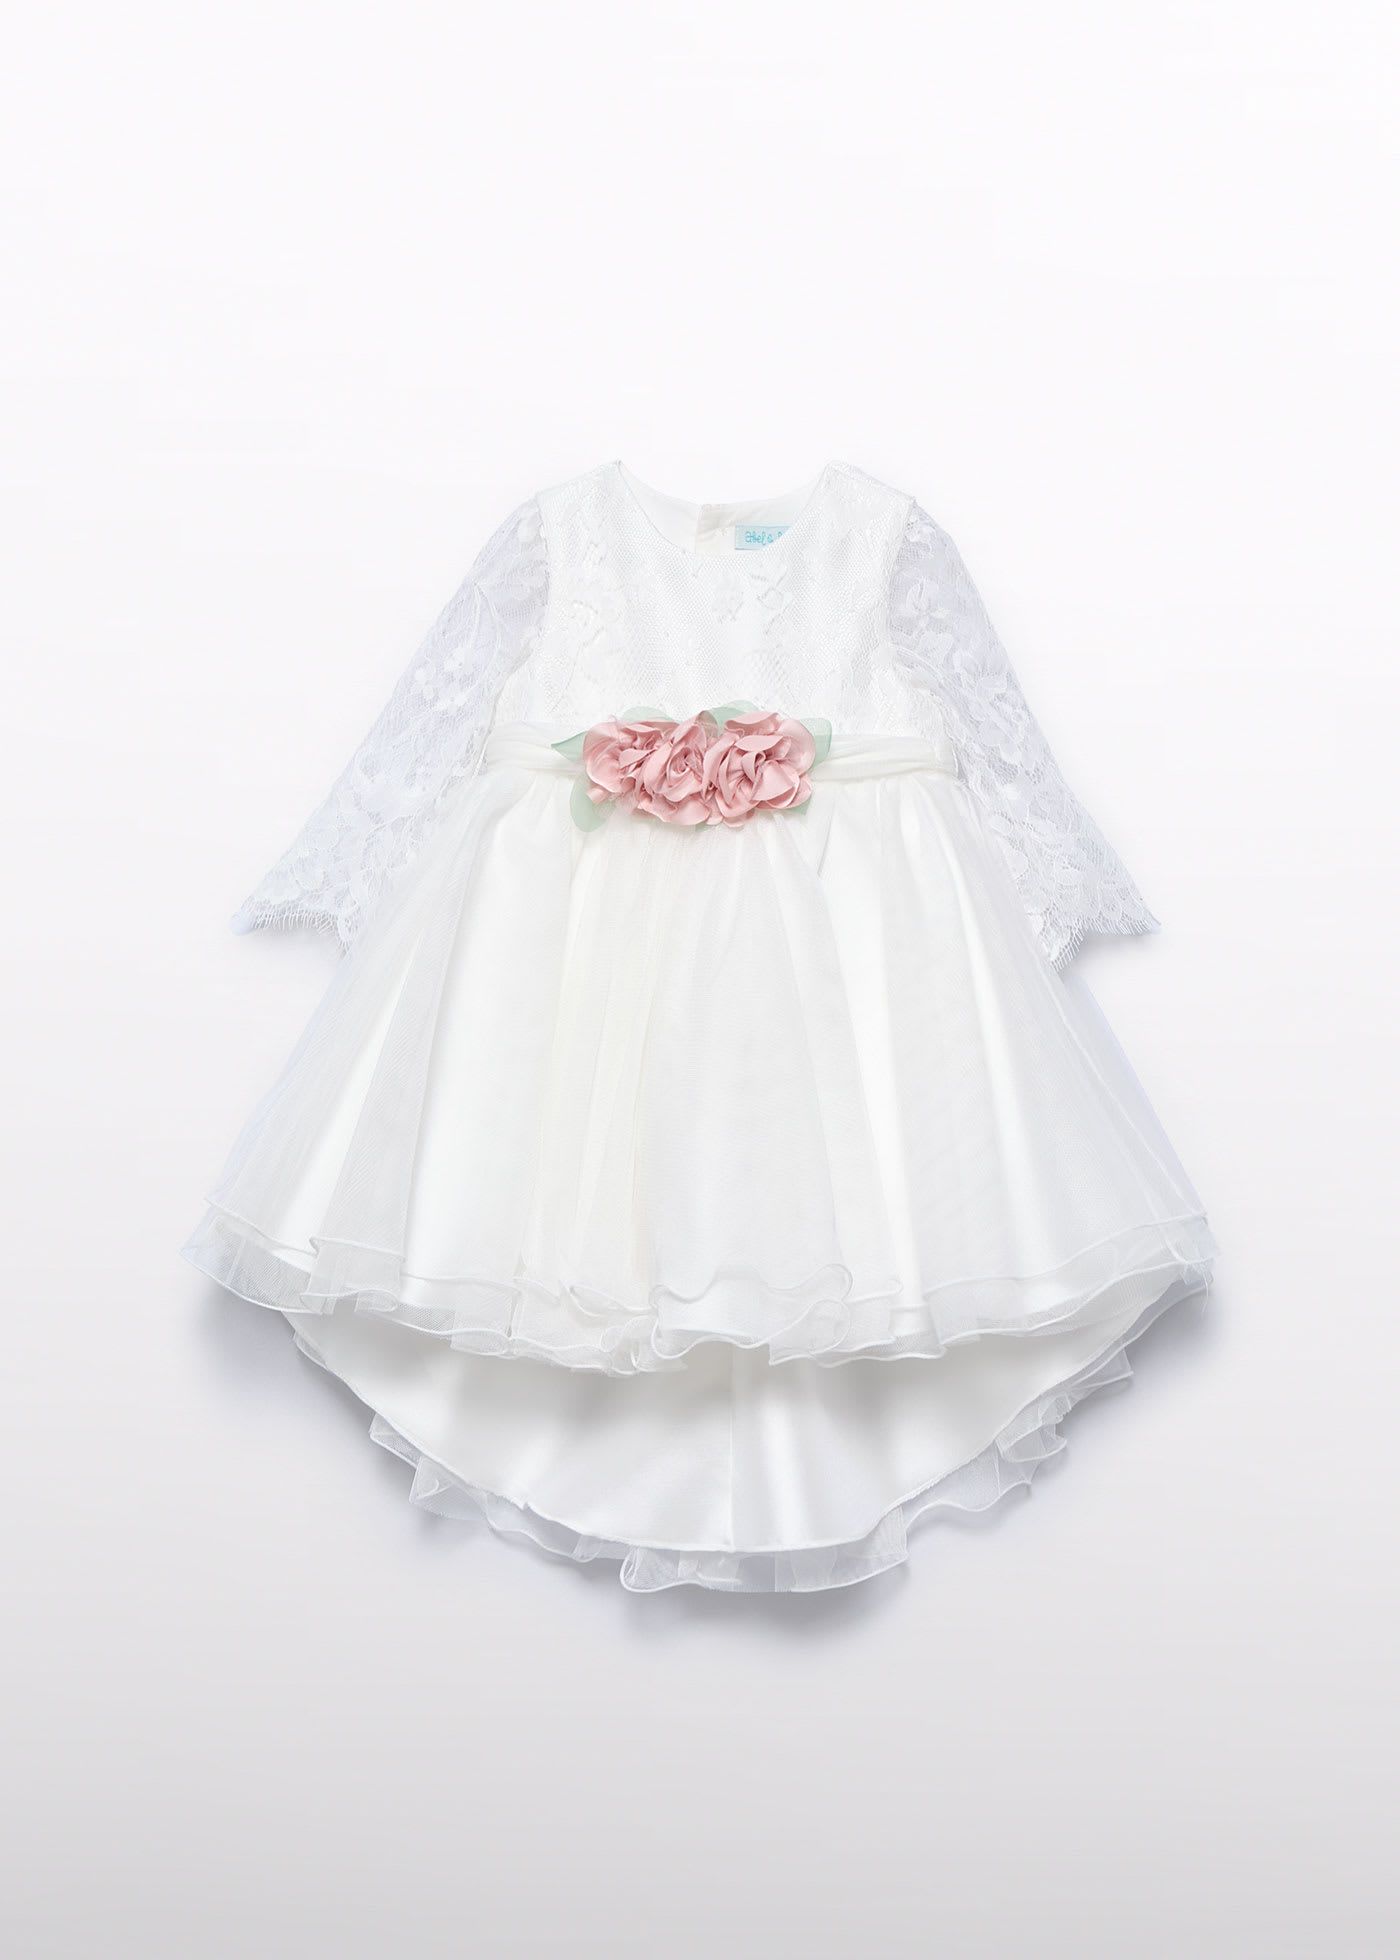 Φόρεμα δαντέλα μωρό